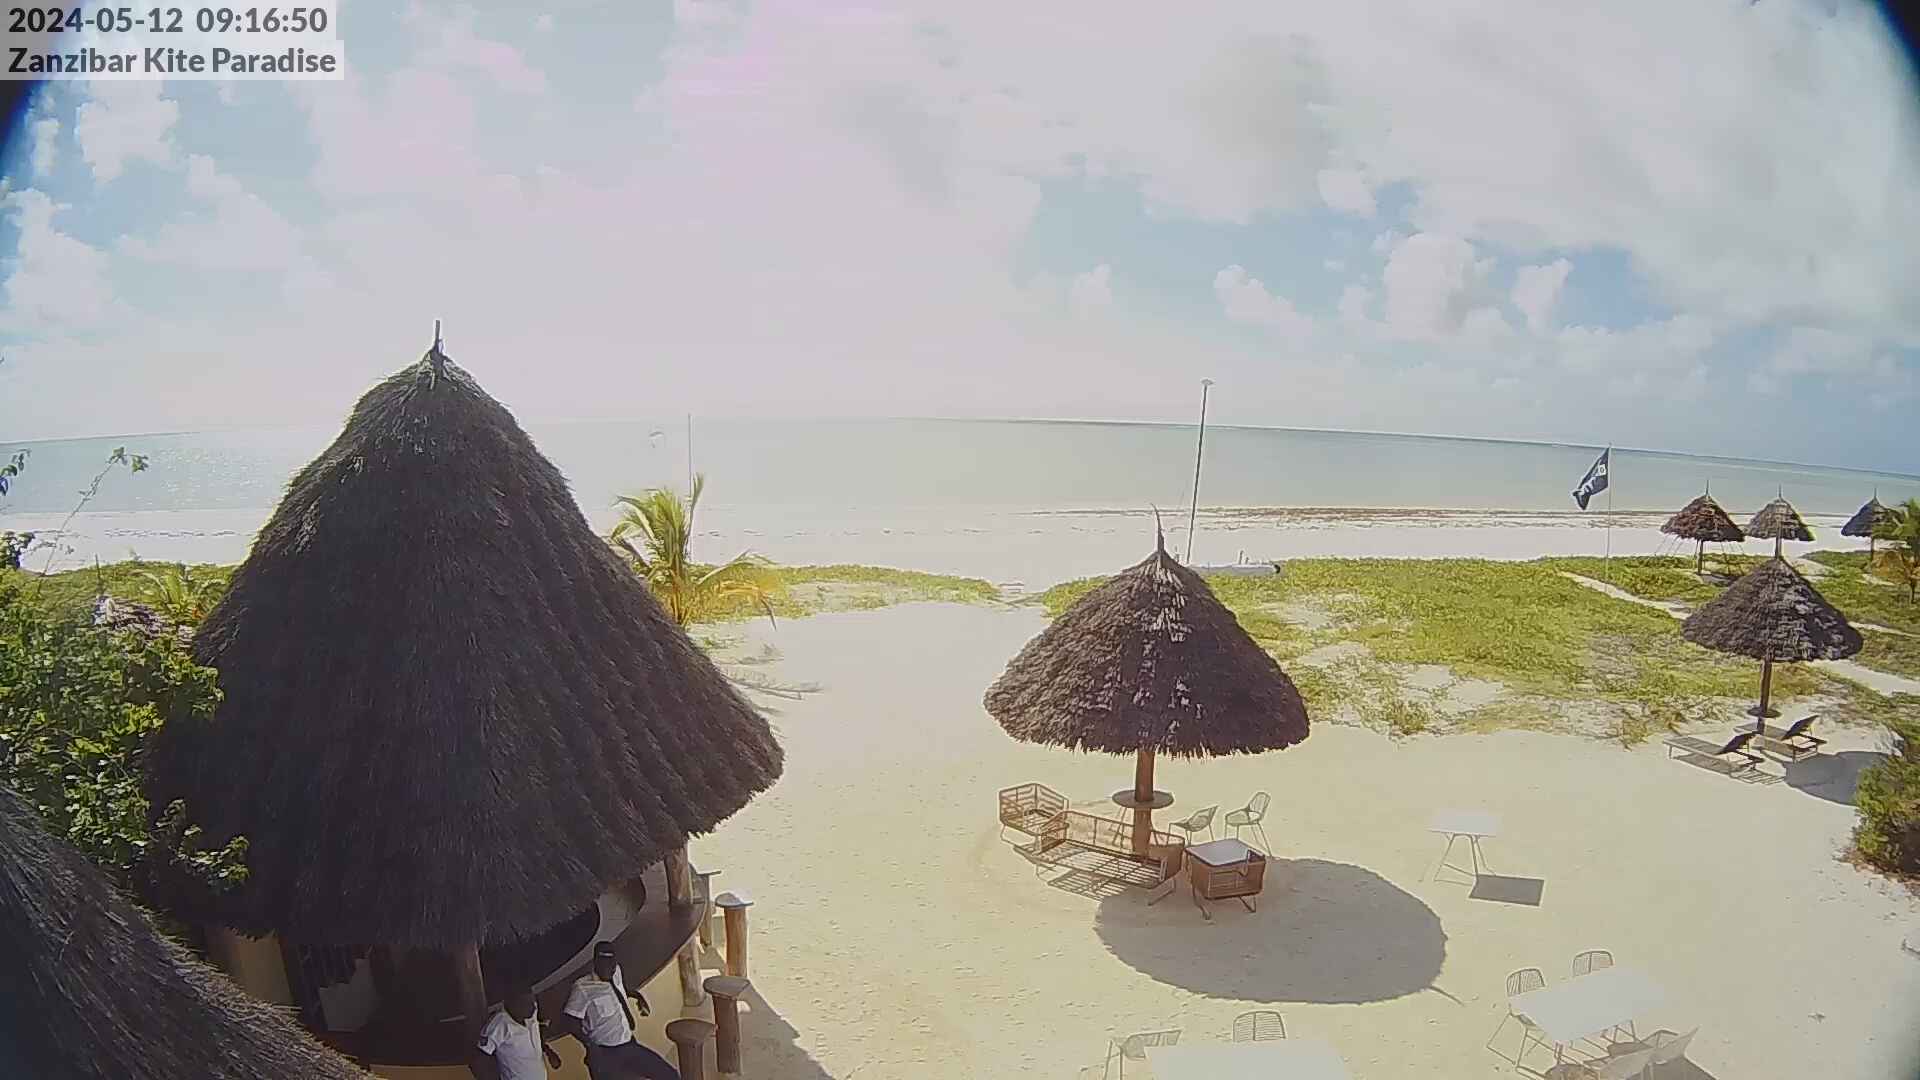 Paje Beach (Zanzibar) Mar. 09:18